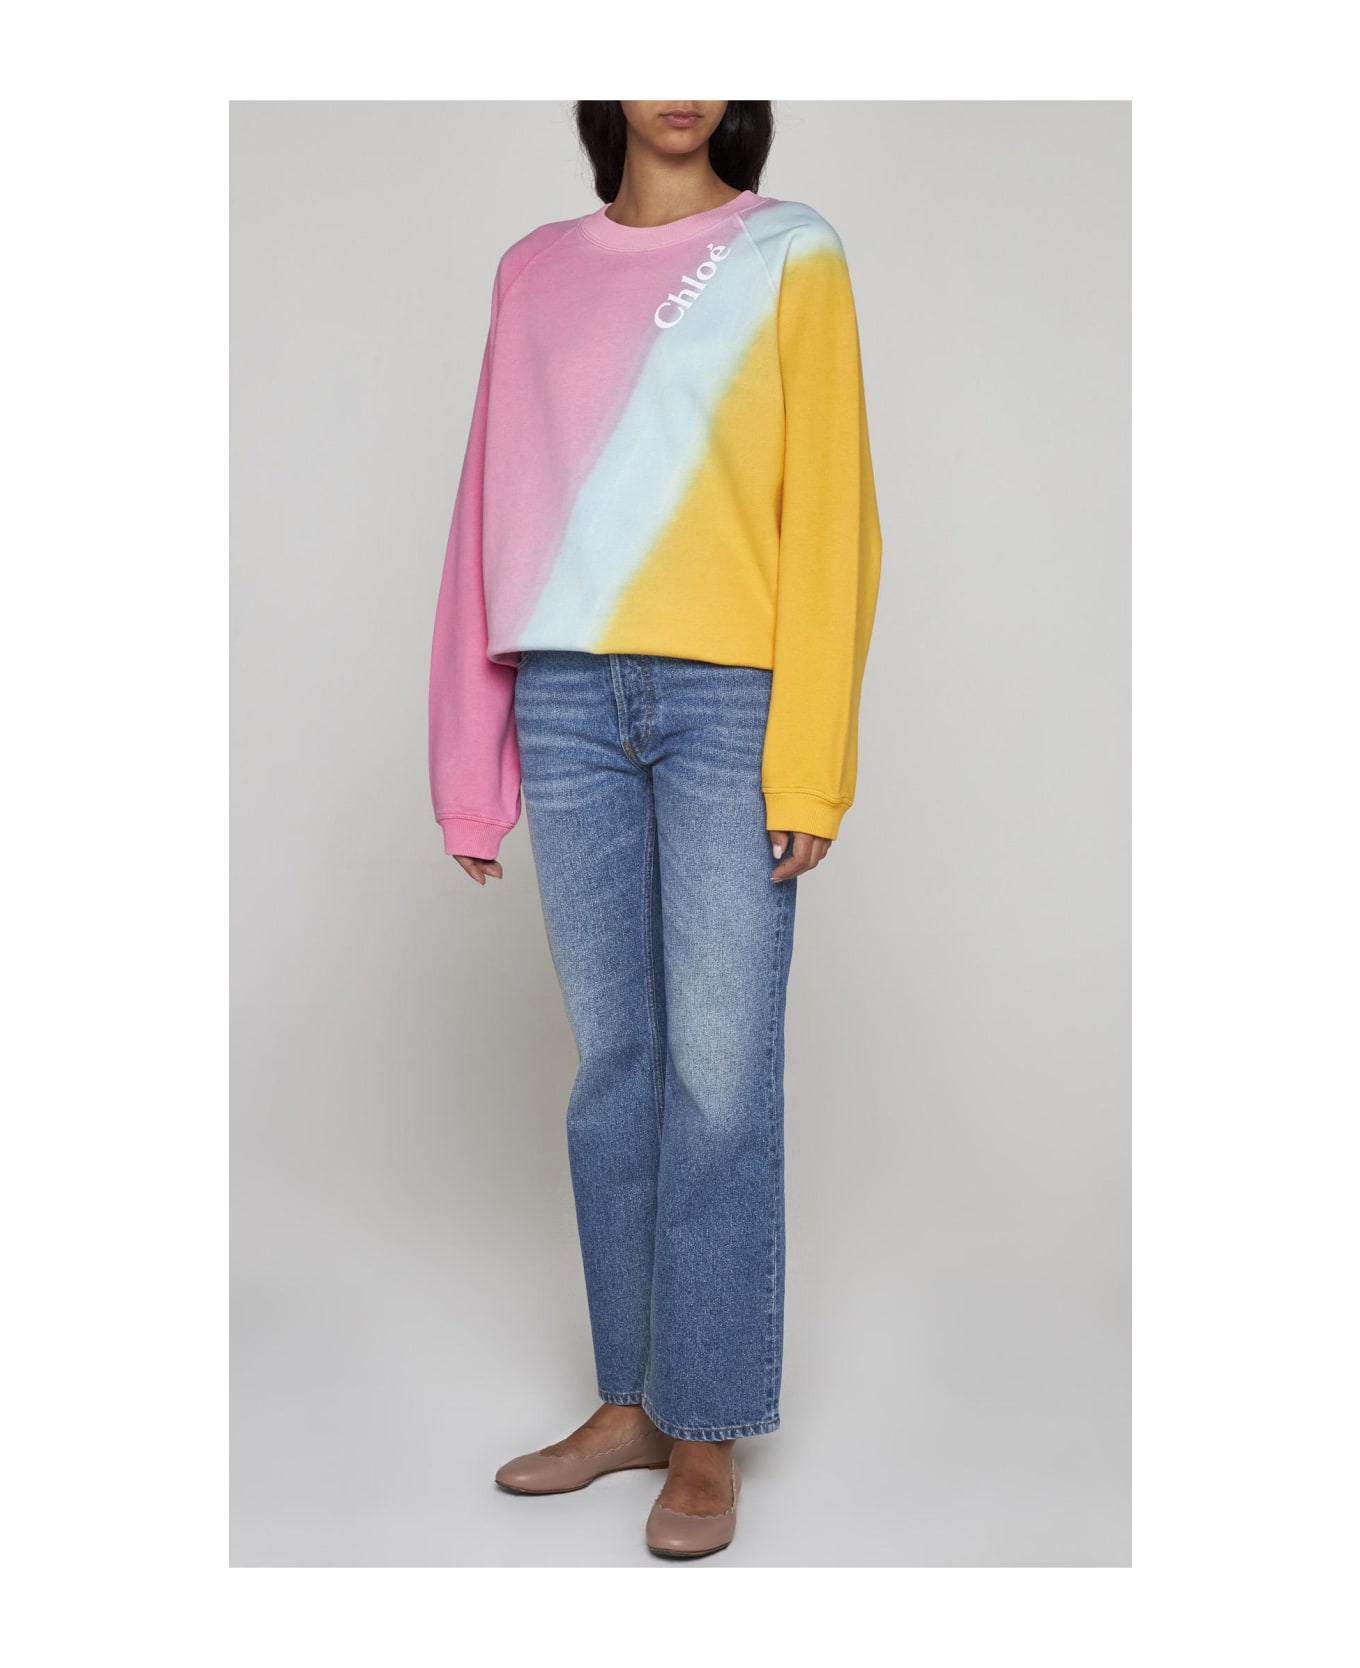 Chloé Cotton Sweatshirt - Multicolor Pink